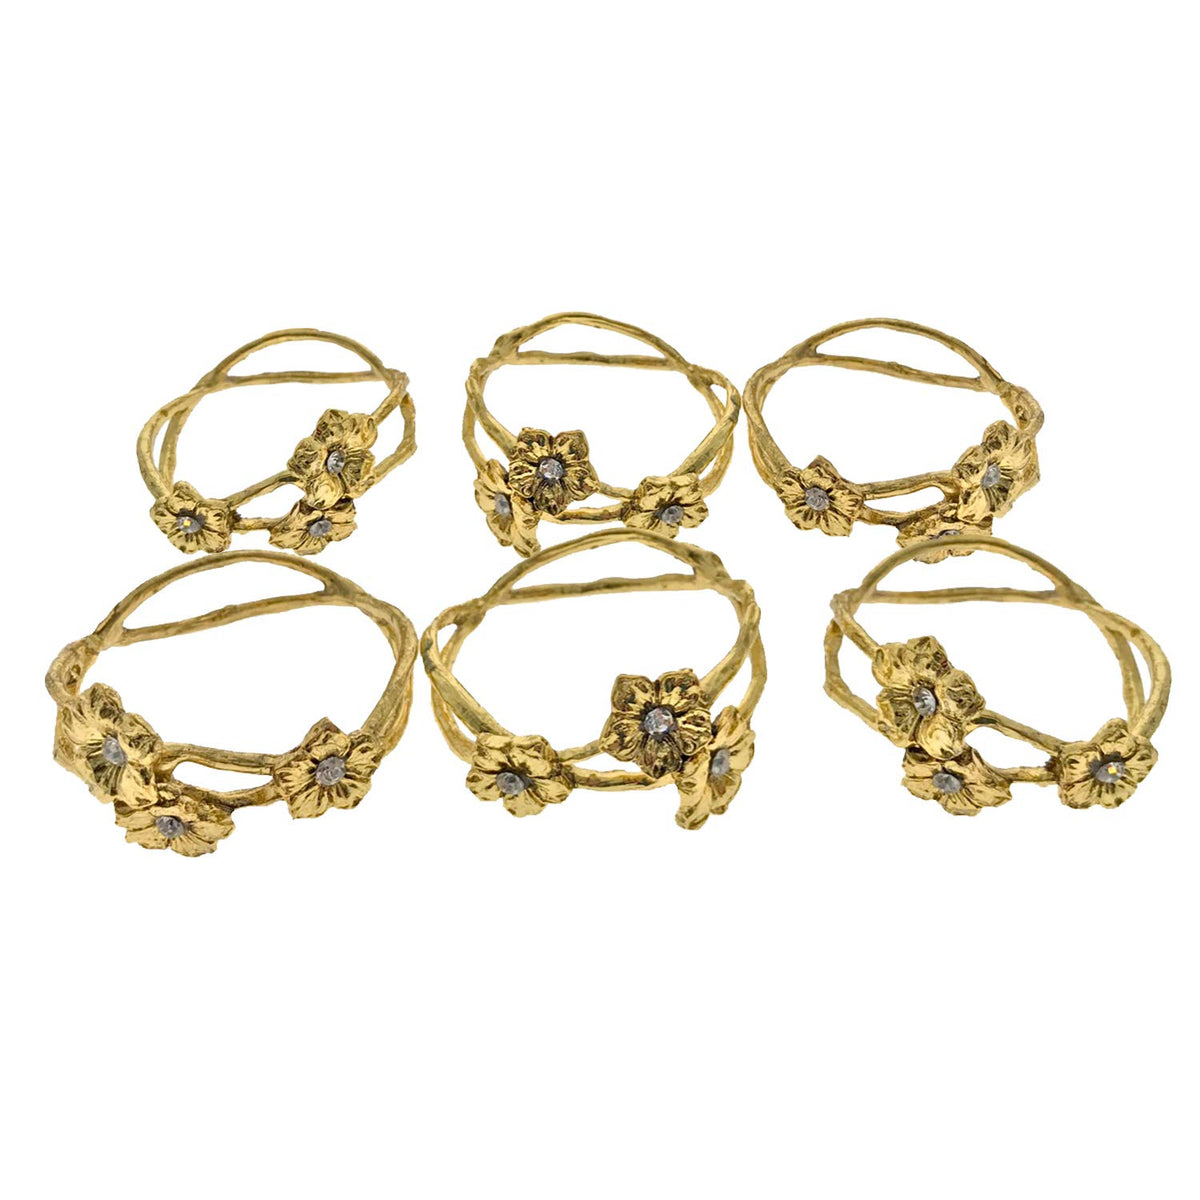 Napkin Rings in Gold Flower Design - Set of 6 - Decozen